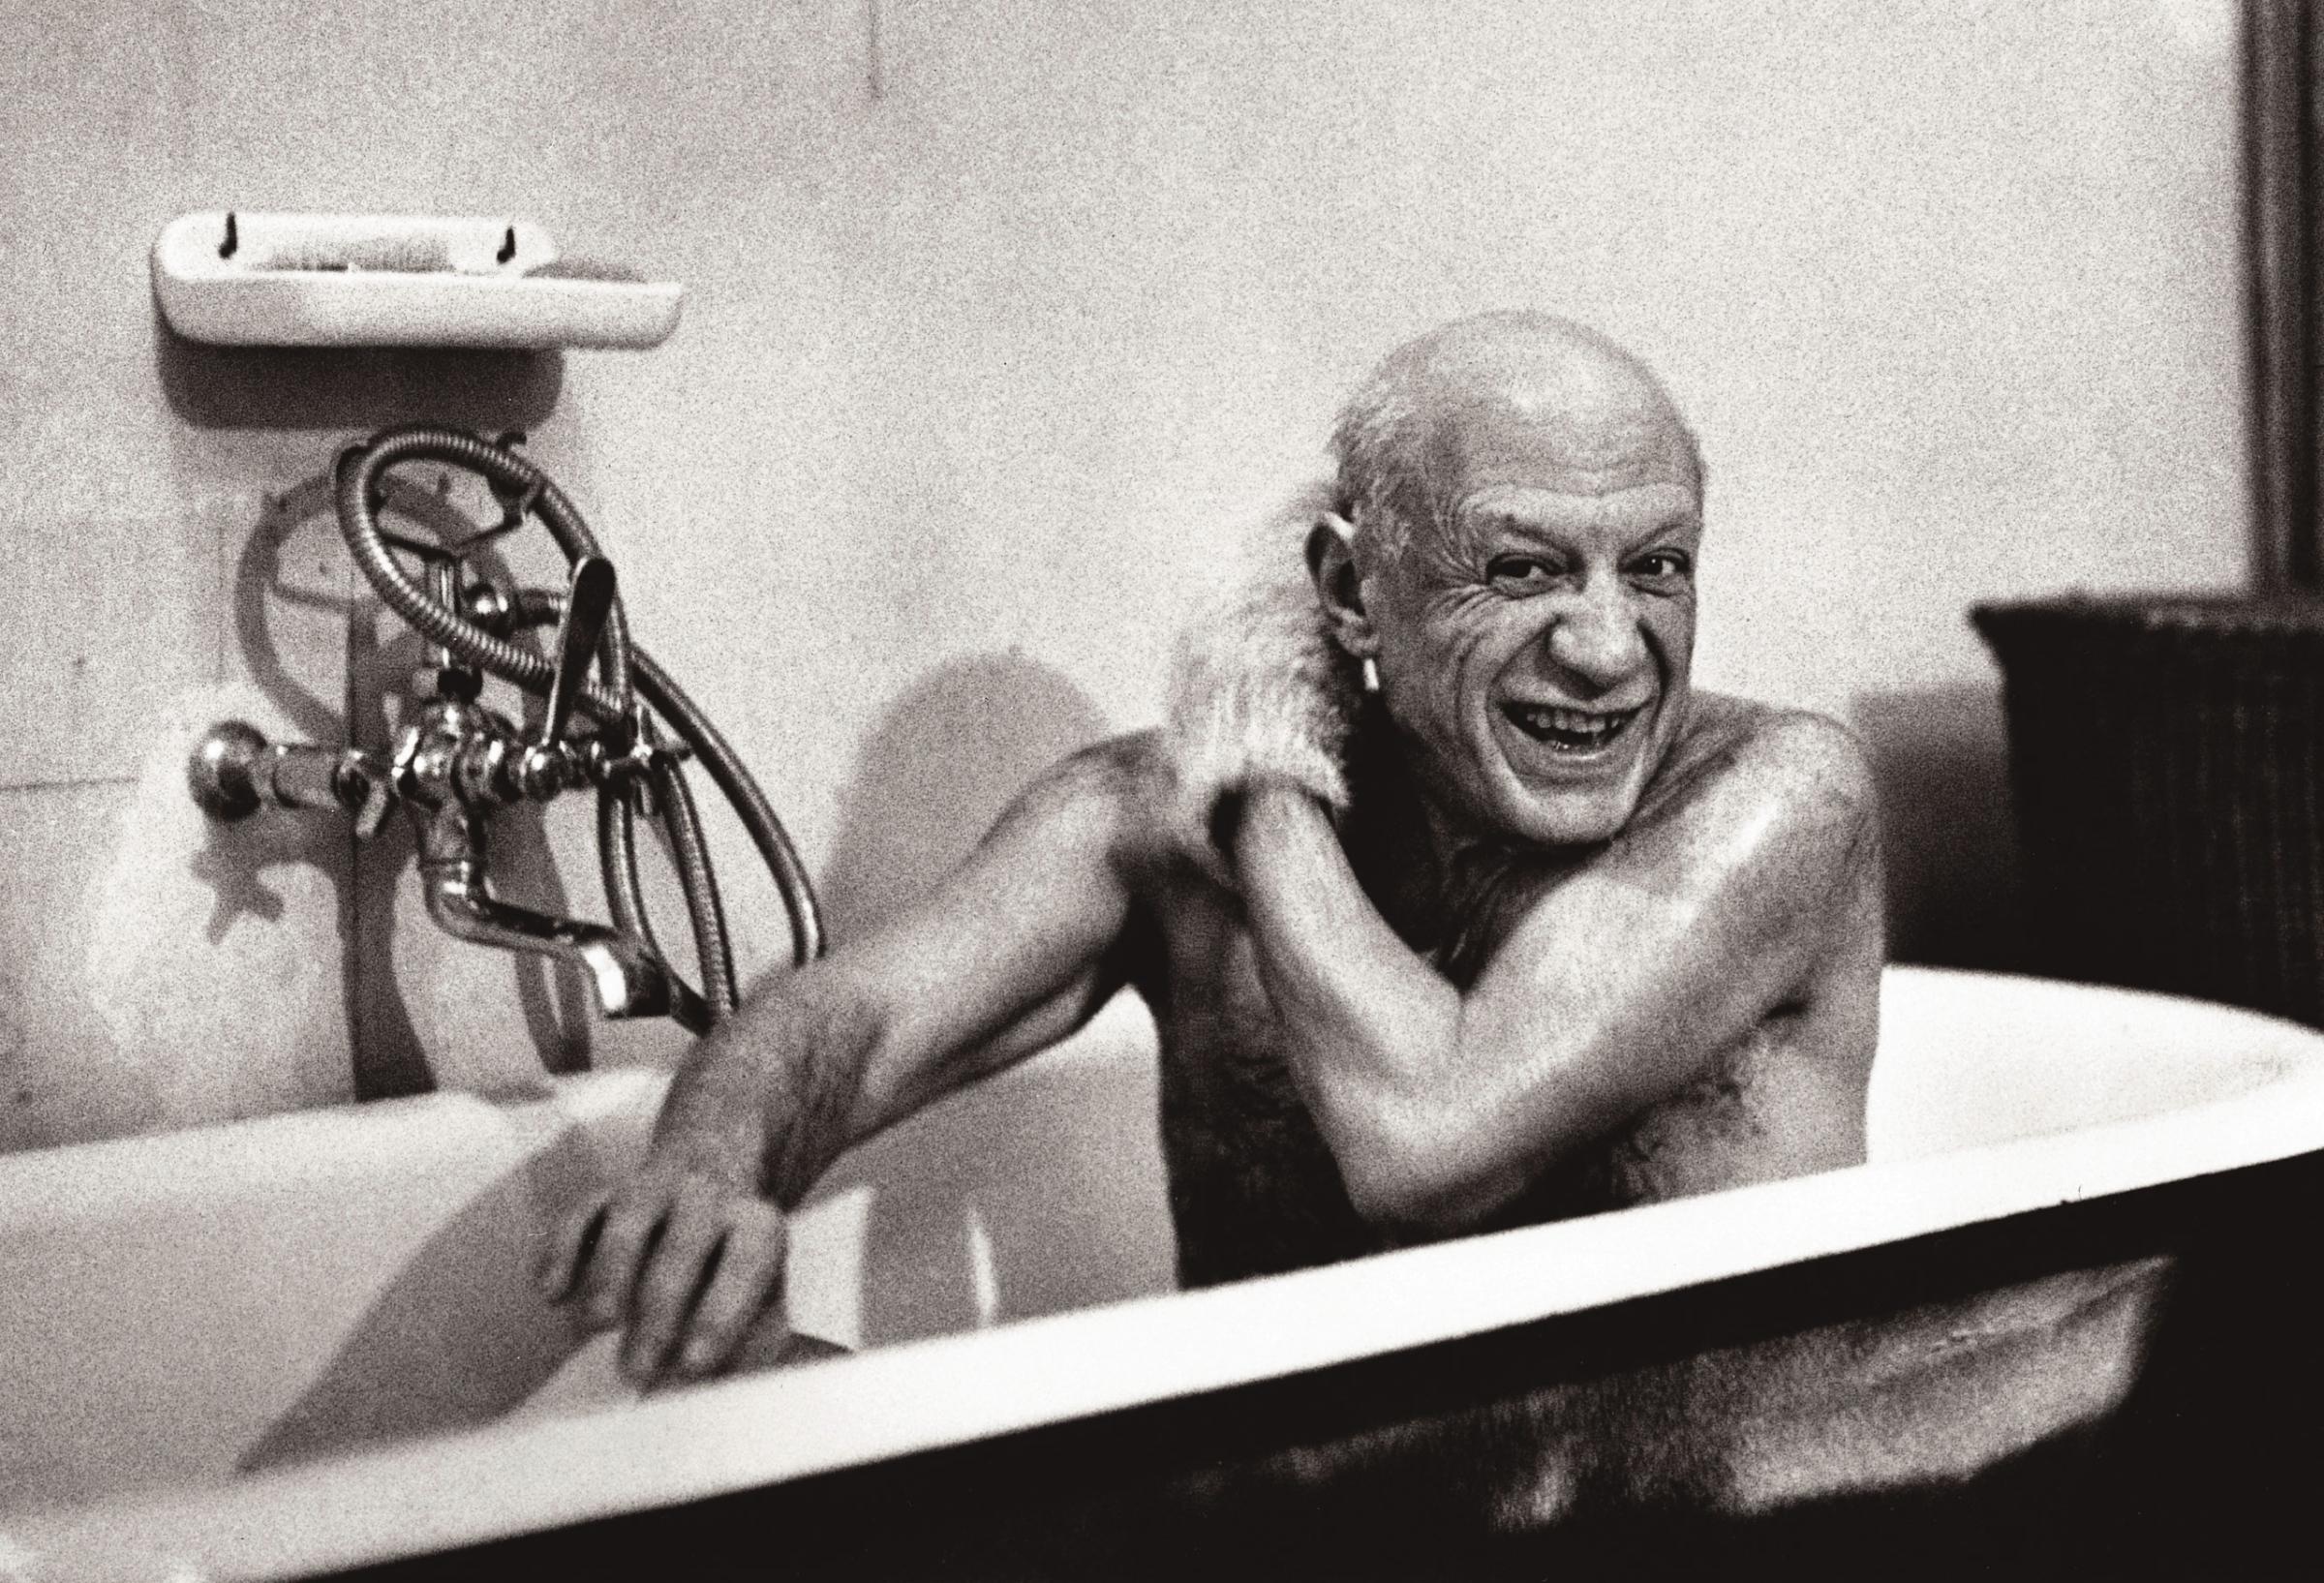 Pablo Picasso in the bathtub: Villa la Californie, Cannes France. February 8, 1956.